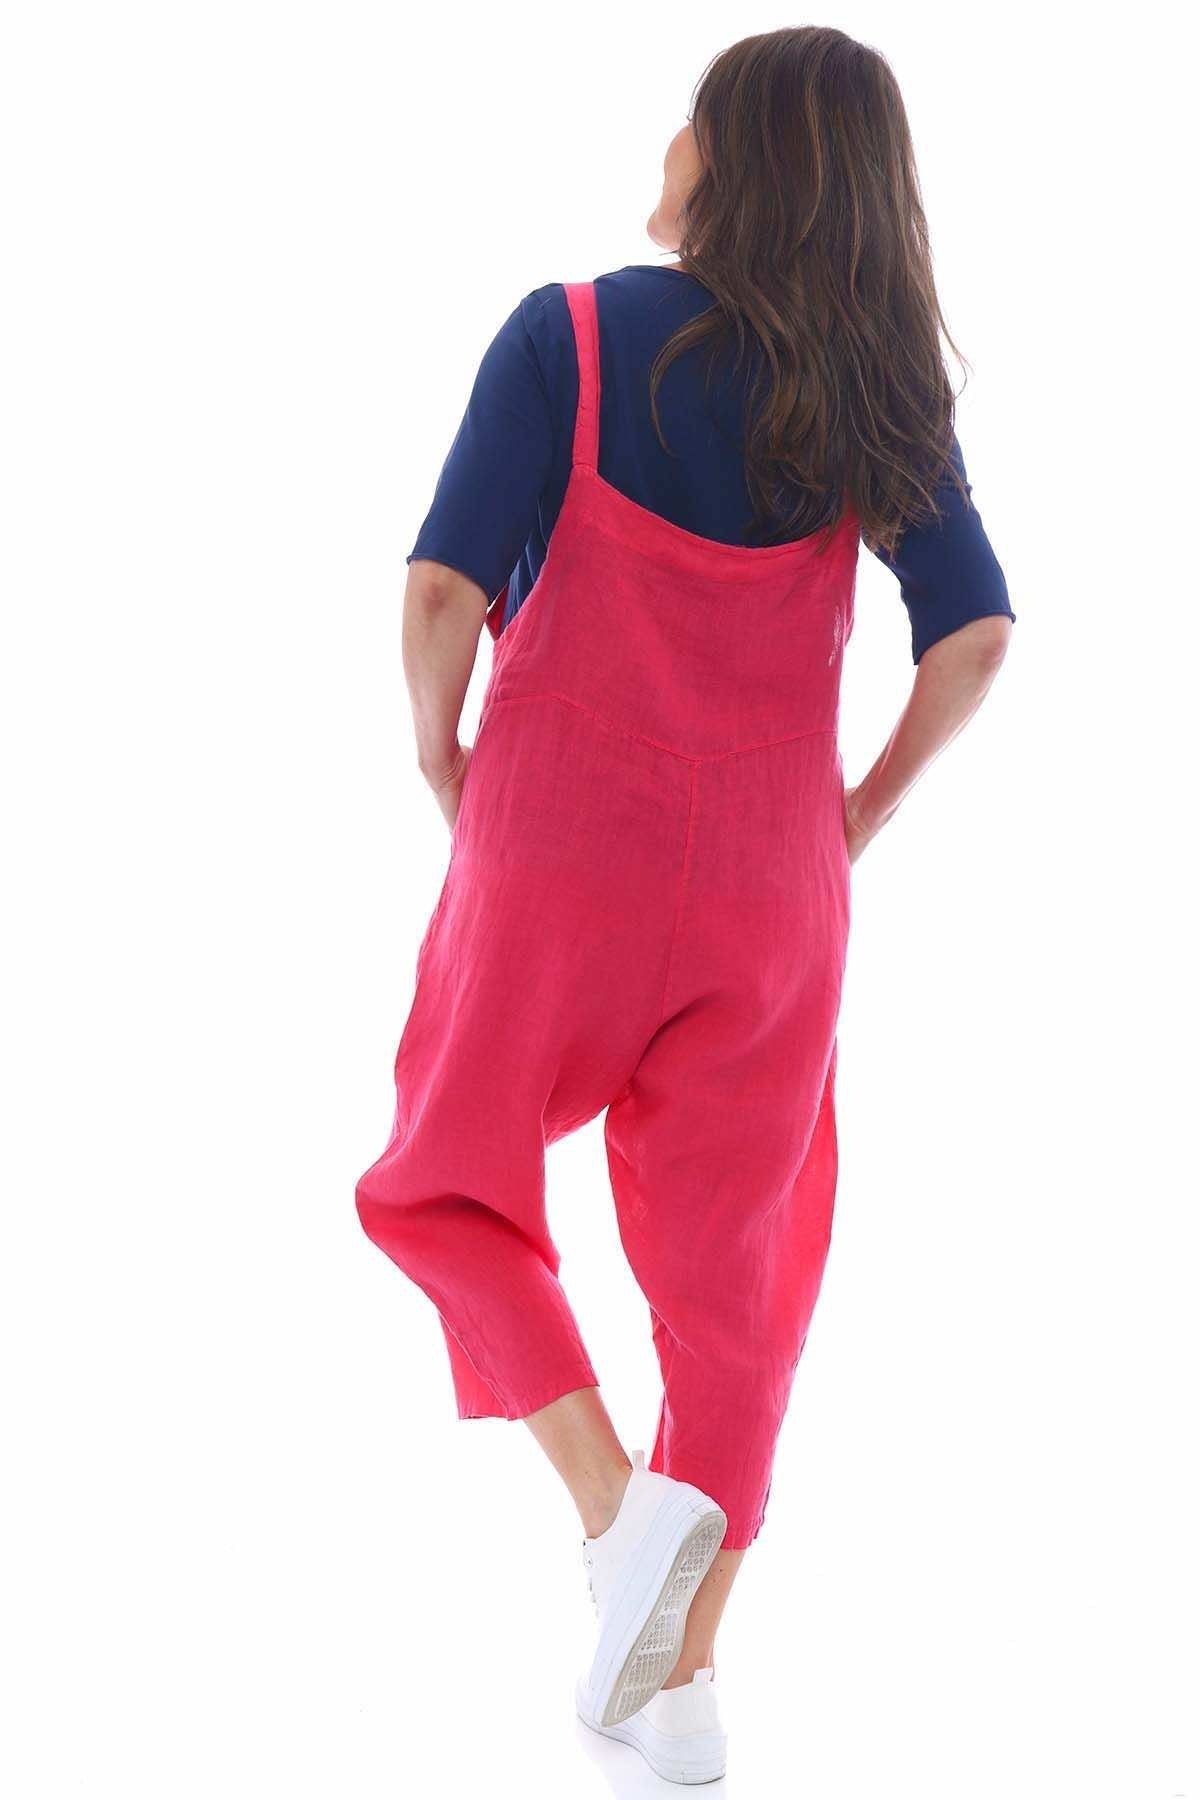 Mario Linen Jumpsuit Hot Pink